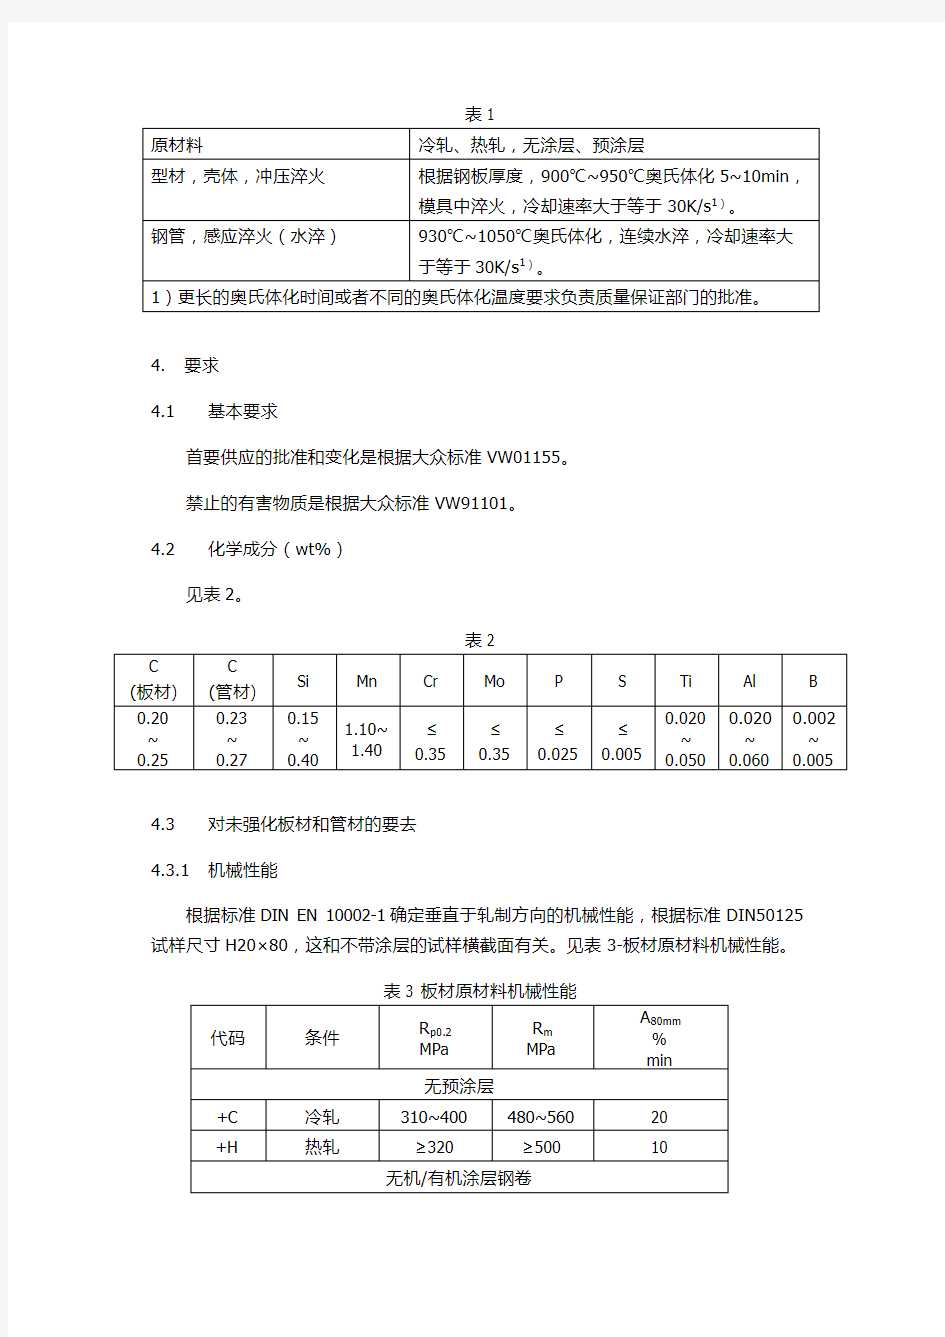 大众热成型标准中文翻译TL4225_EN_2006-05-01